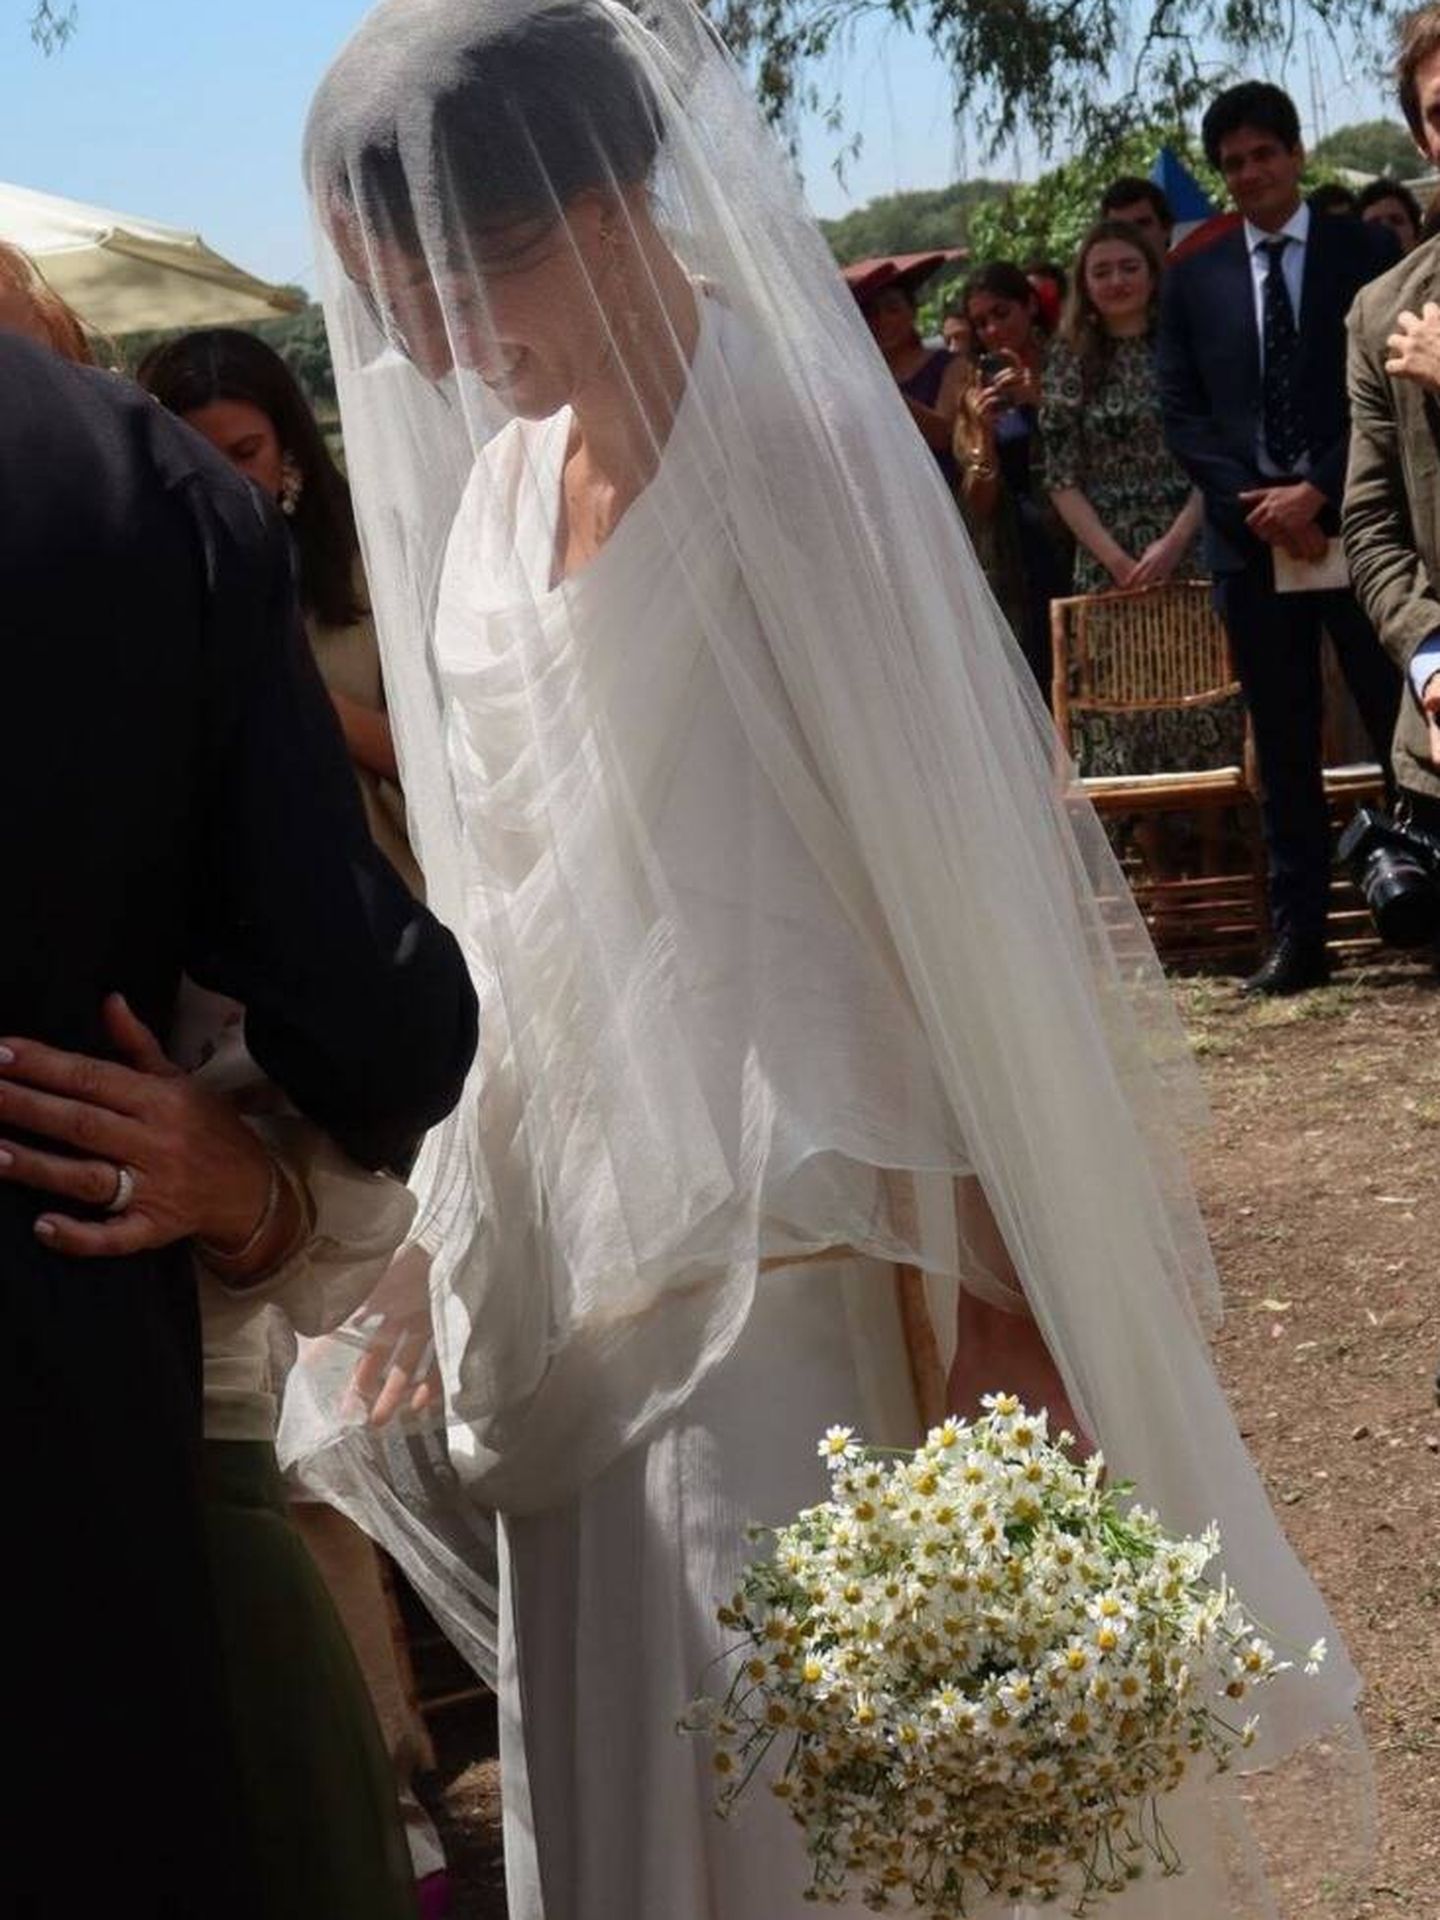 El vestido boho chic de la novia. (Instagram)